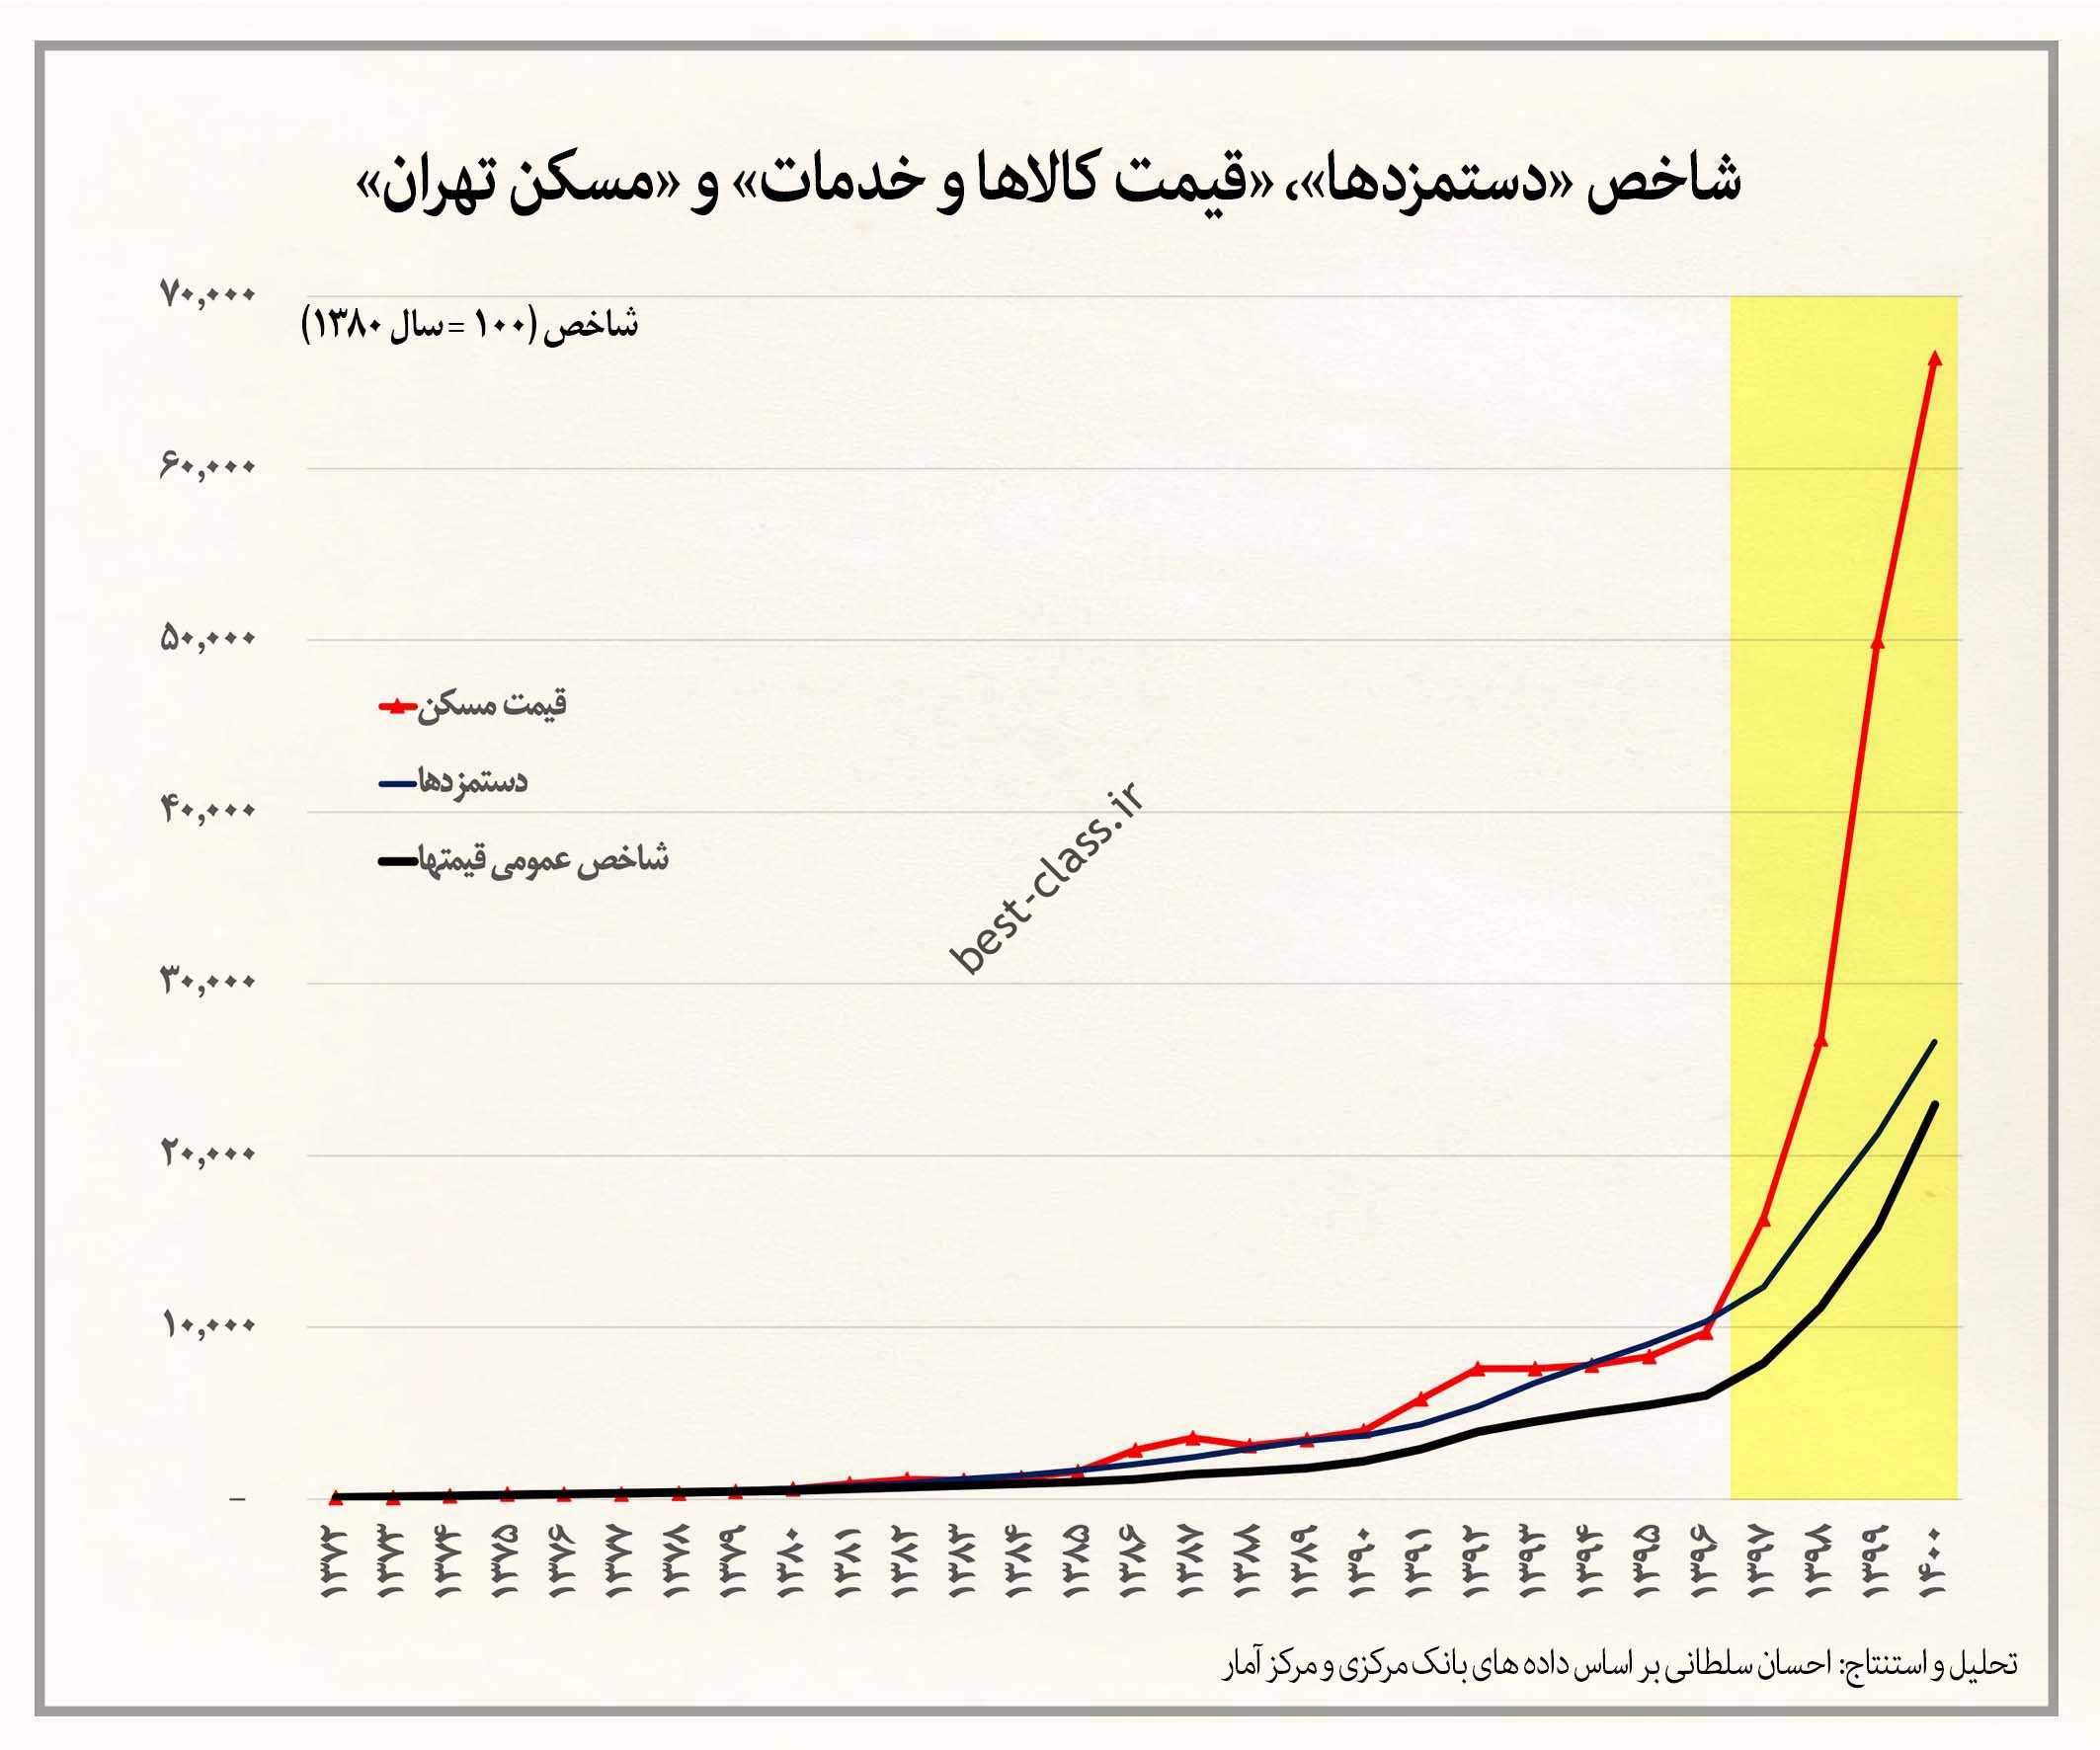 قیمت مسکن در تهران در دو دهه گذشته 110 برابر شده است